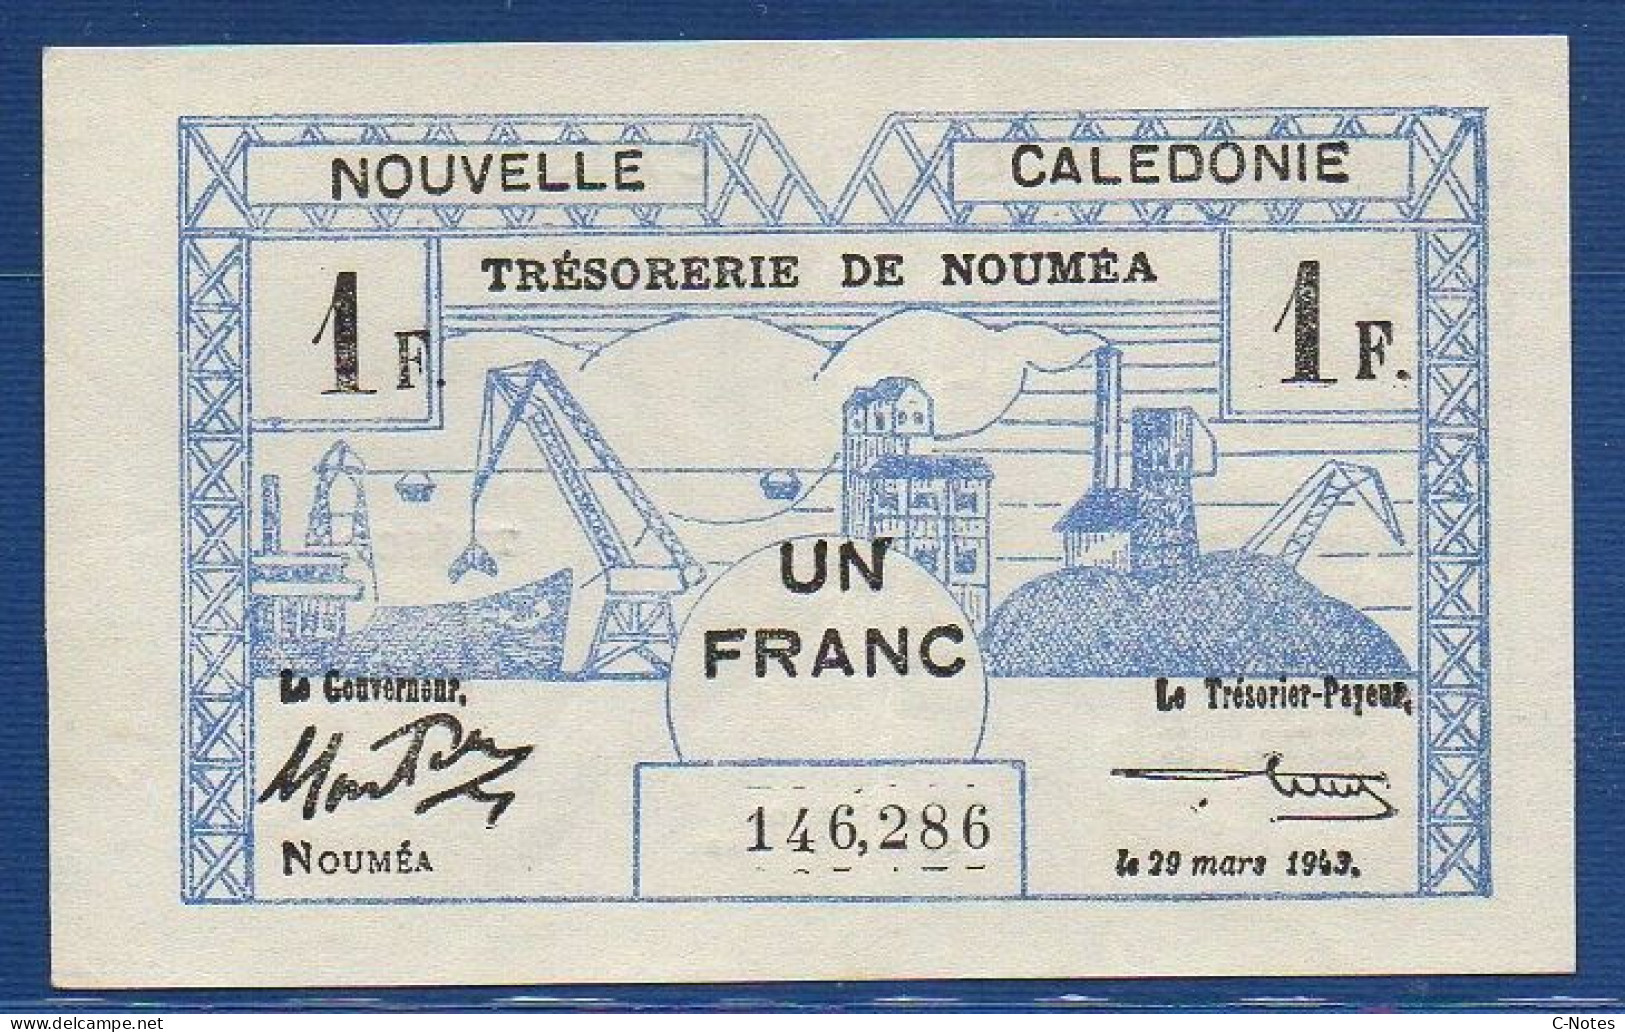 NEW CALEDONIA - Nouméa  - P.55a – 1 Franc 1943 XF/AU, S/n 146,286 - Nouvelle-Calédonie 1873-1985